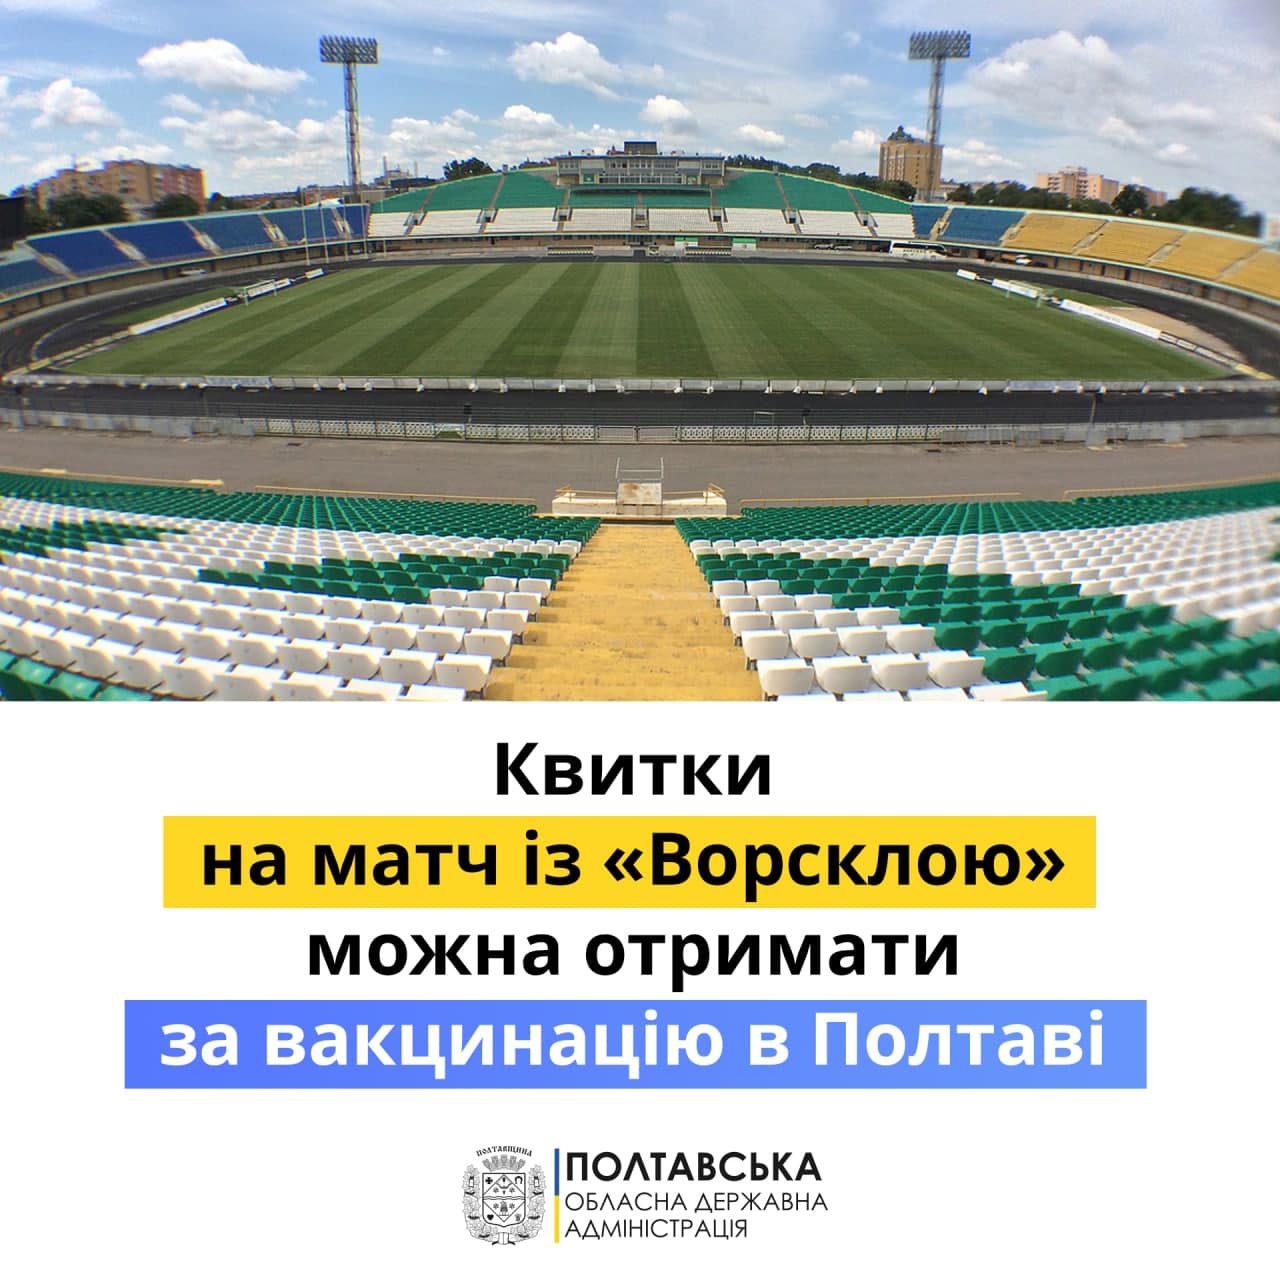 Полтавці можуть отримати квитки на матч ФК «Ворскла» за вакцинацію від COVID-19